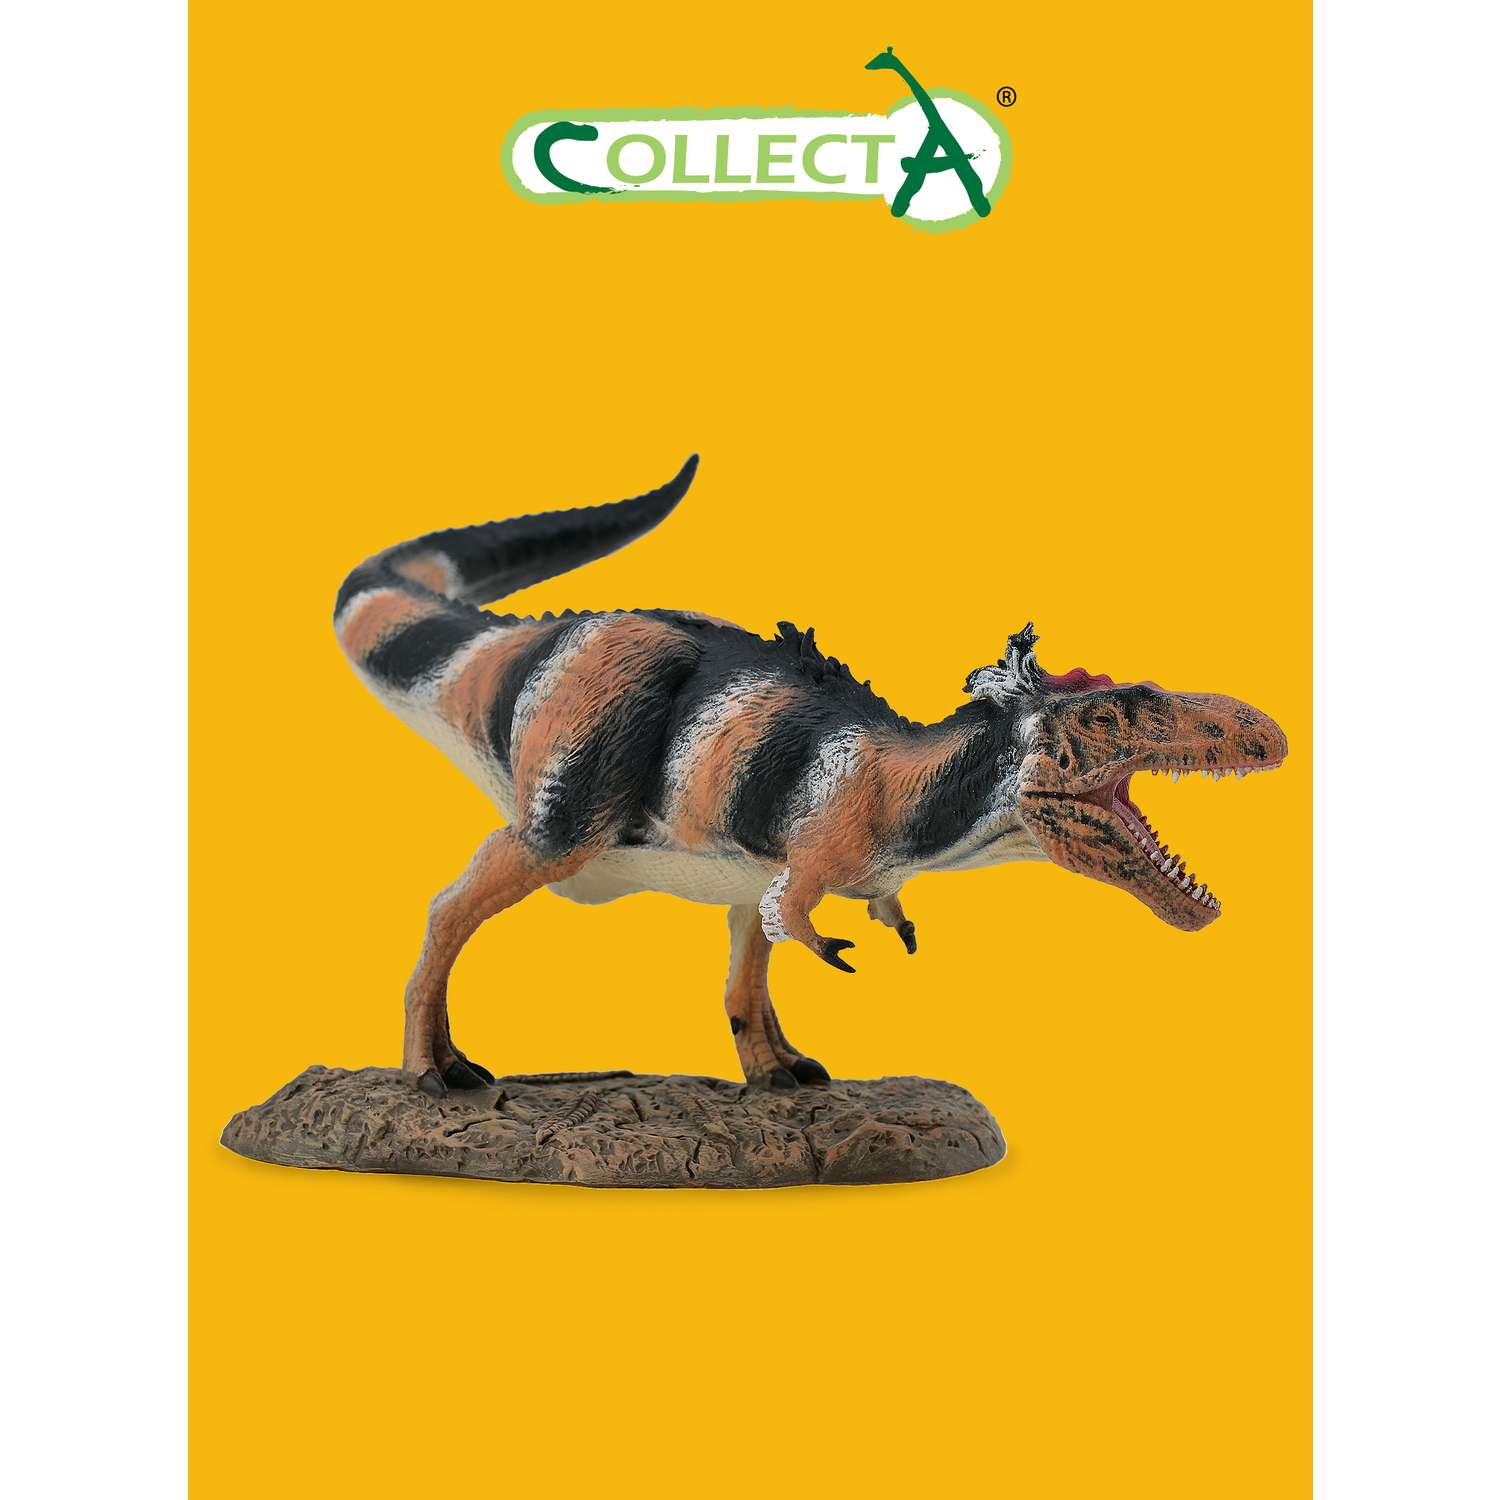 Игрушка Collecta Бистахиэверсор фигурка динозавра - фото 1